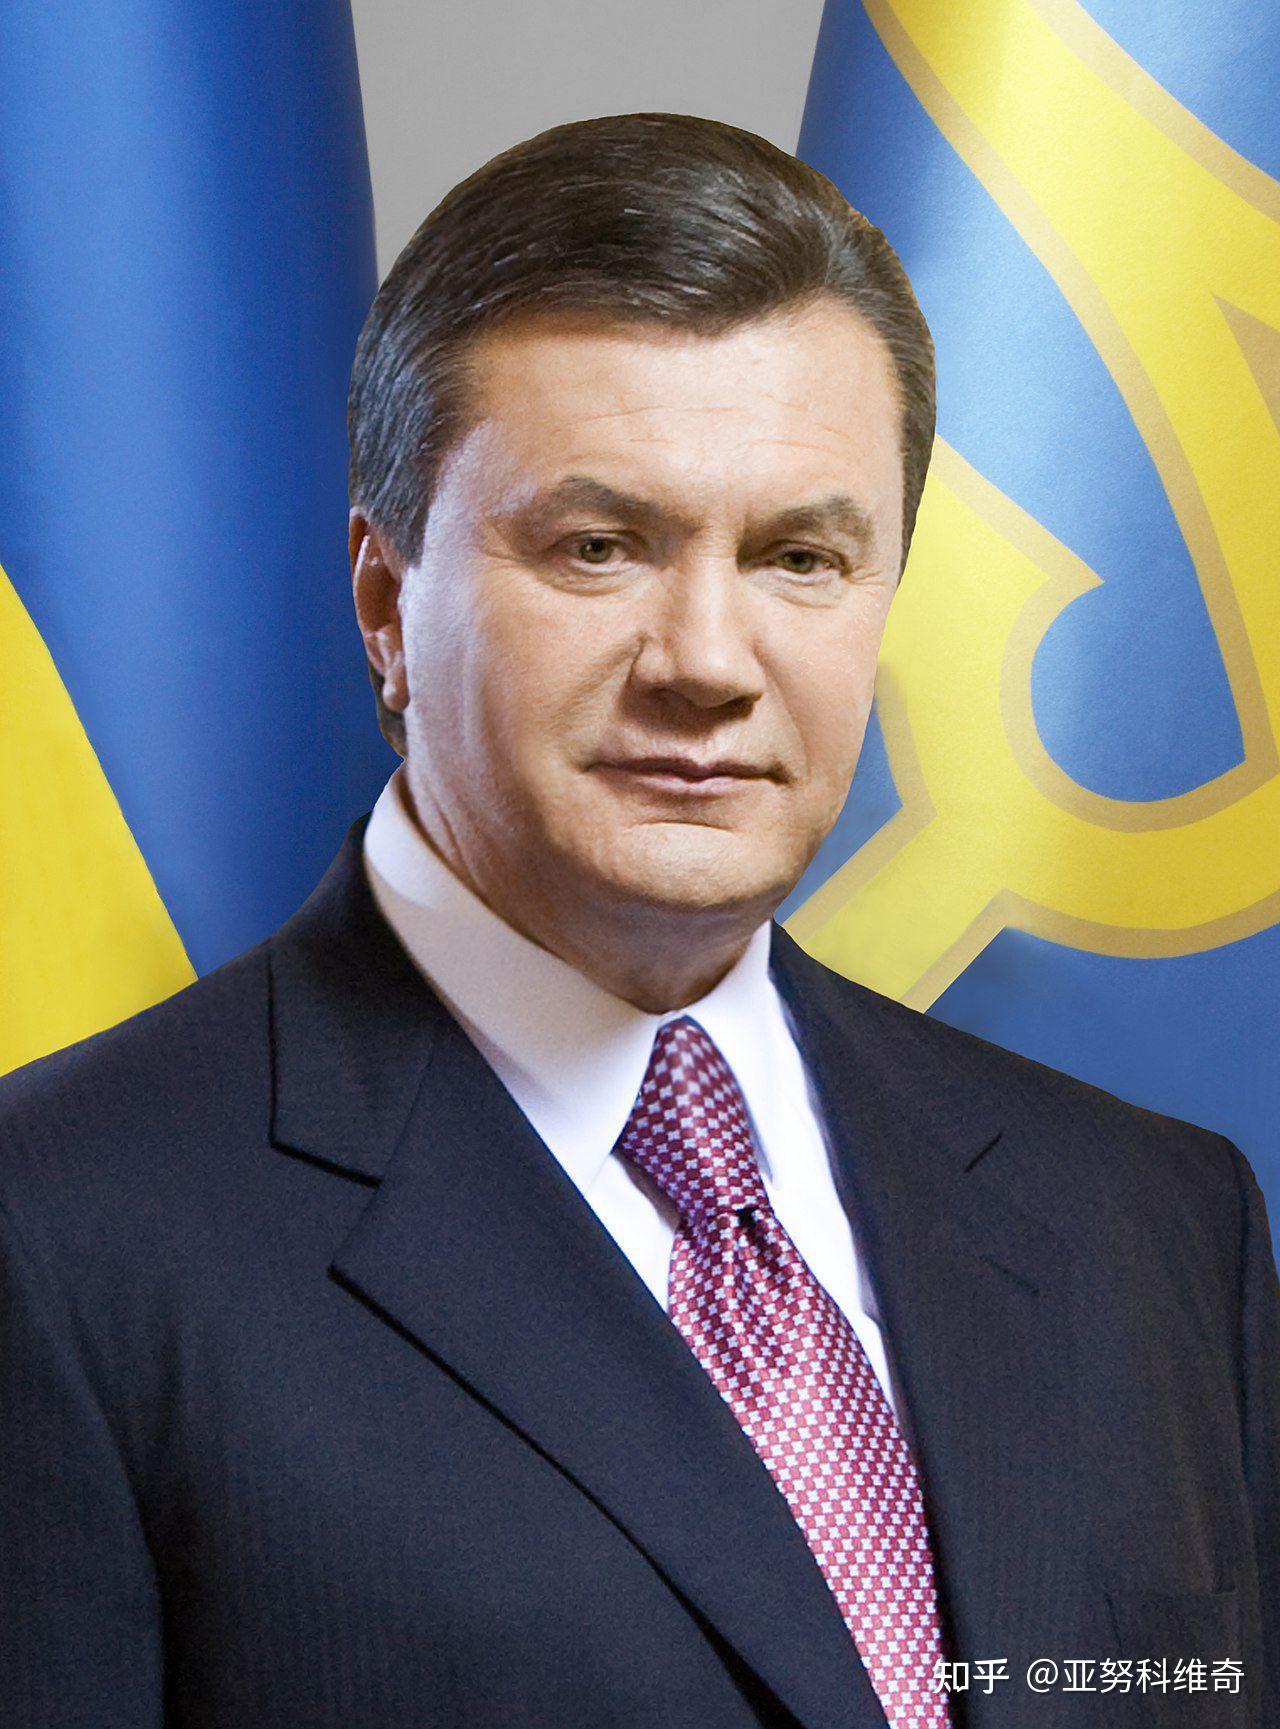 乌克兰总统很帅图片